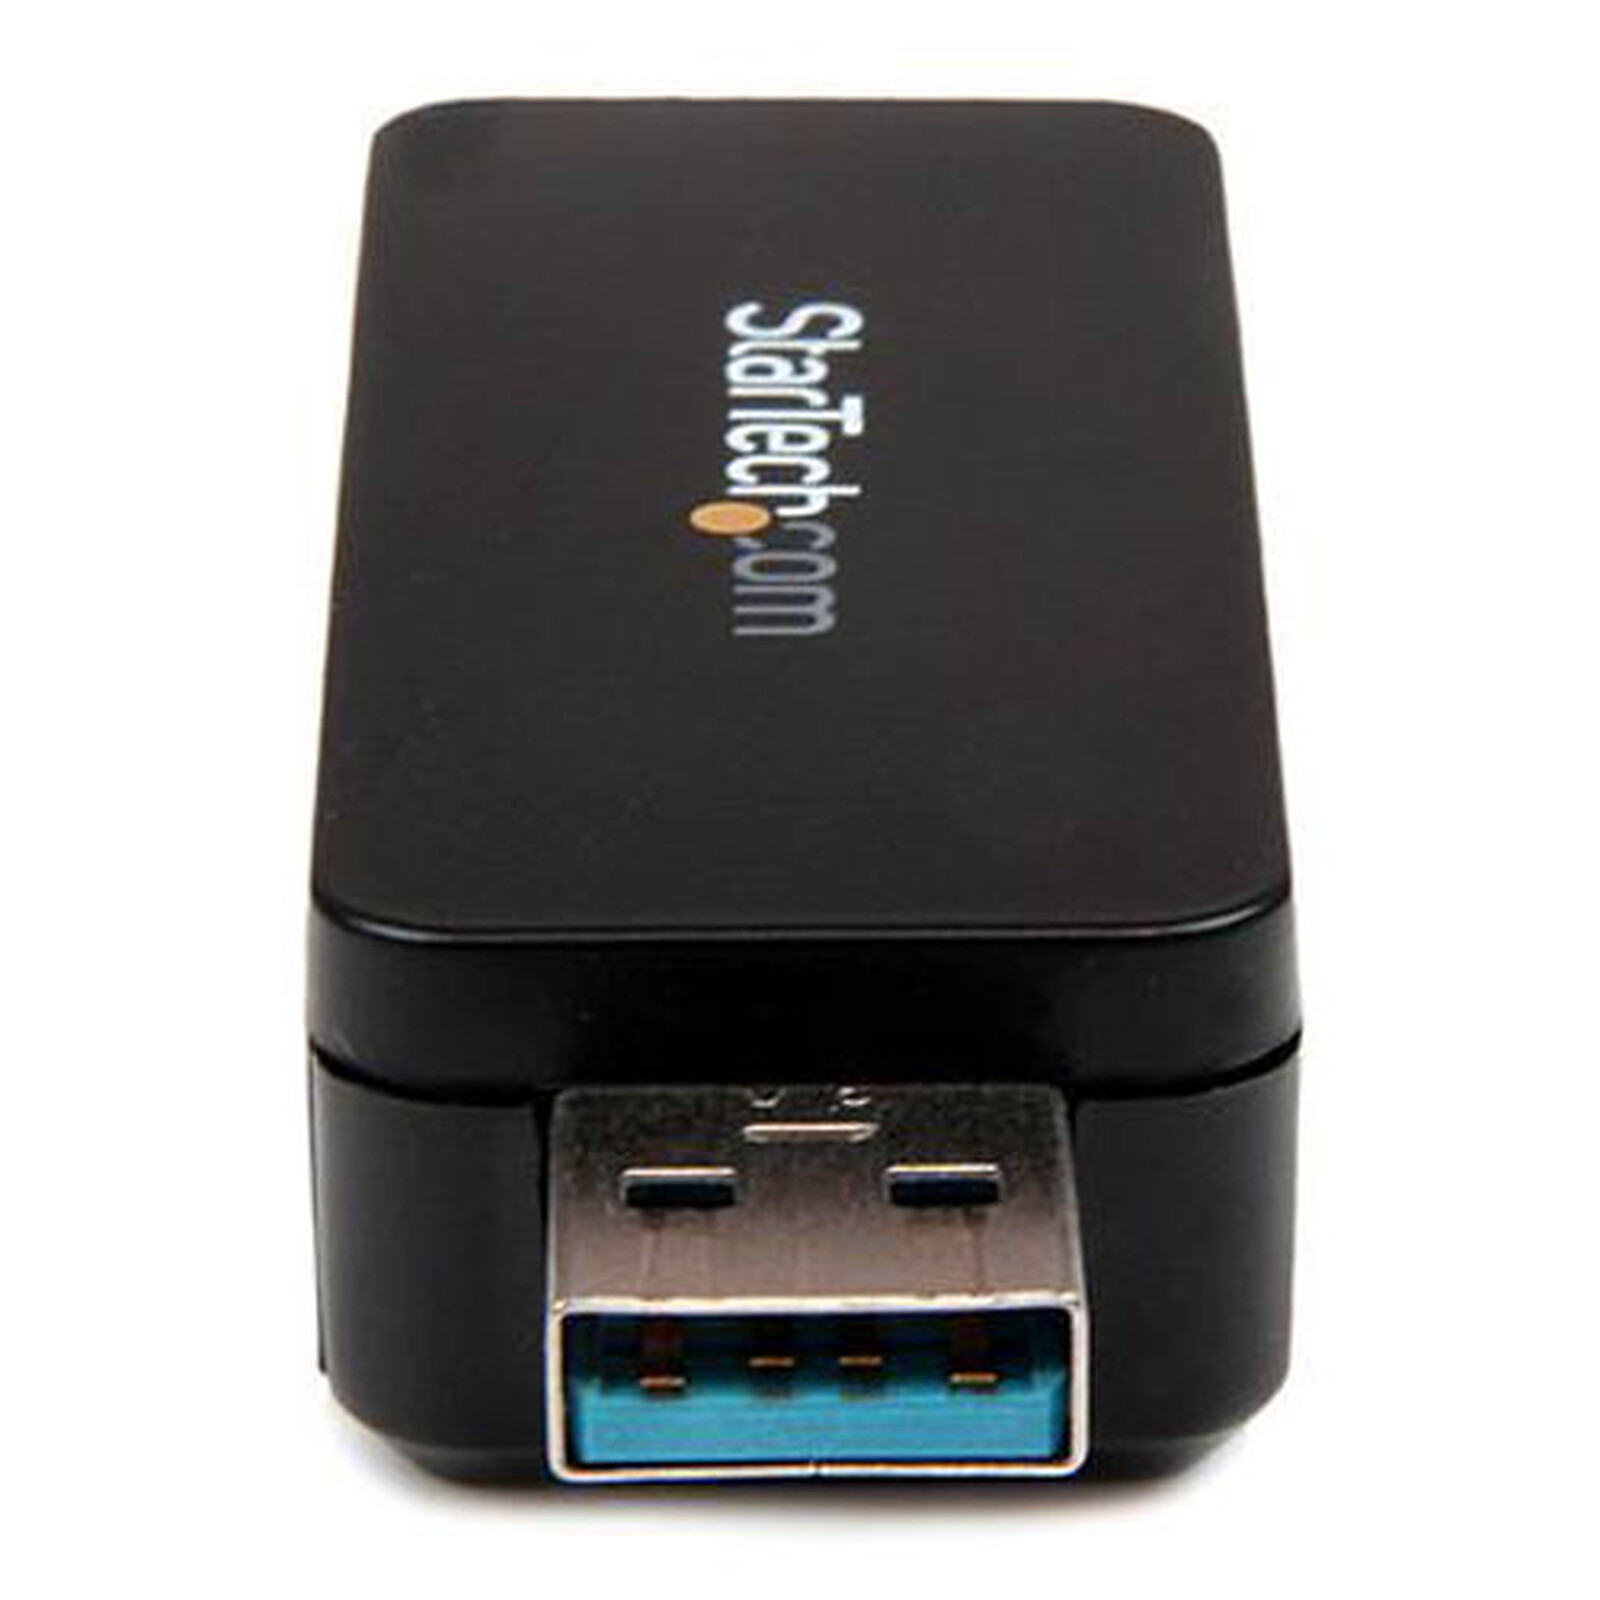 StarTech.com Lecteur externe de cartes mémoires multimédia USB 3.0 - Clé USB  lecteur de cartes SD / Micro SD / MMC / Memory Stick (FCREADMICRO3), Lecteurs de cartes